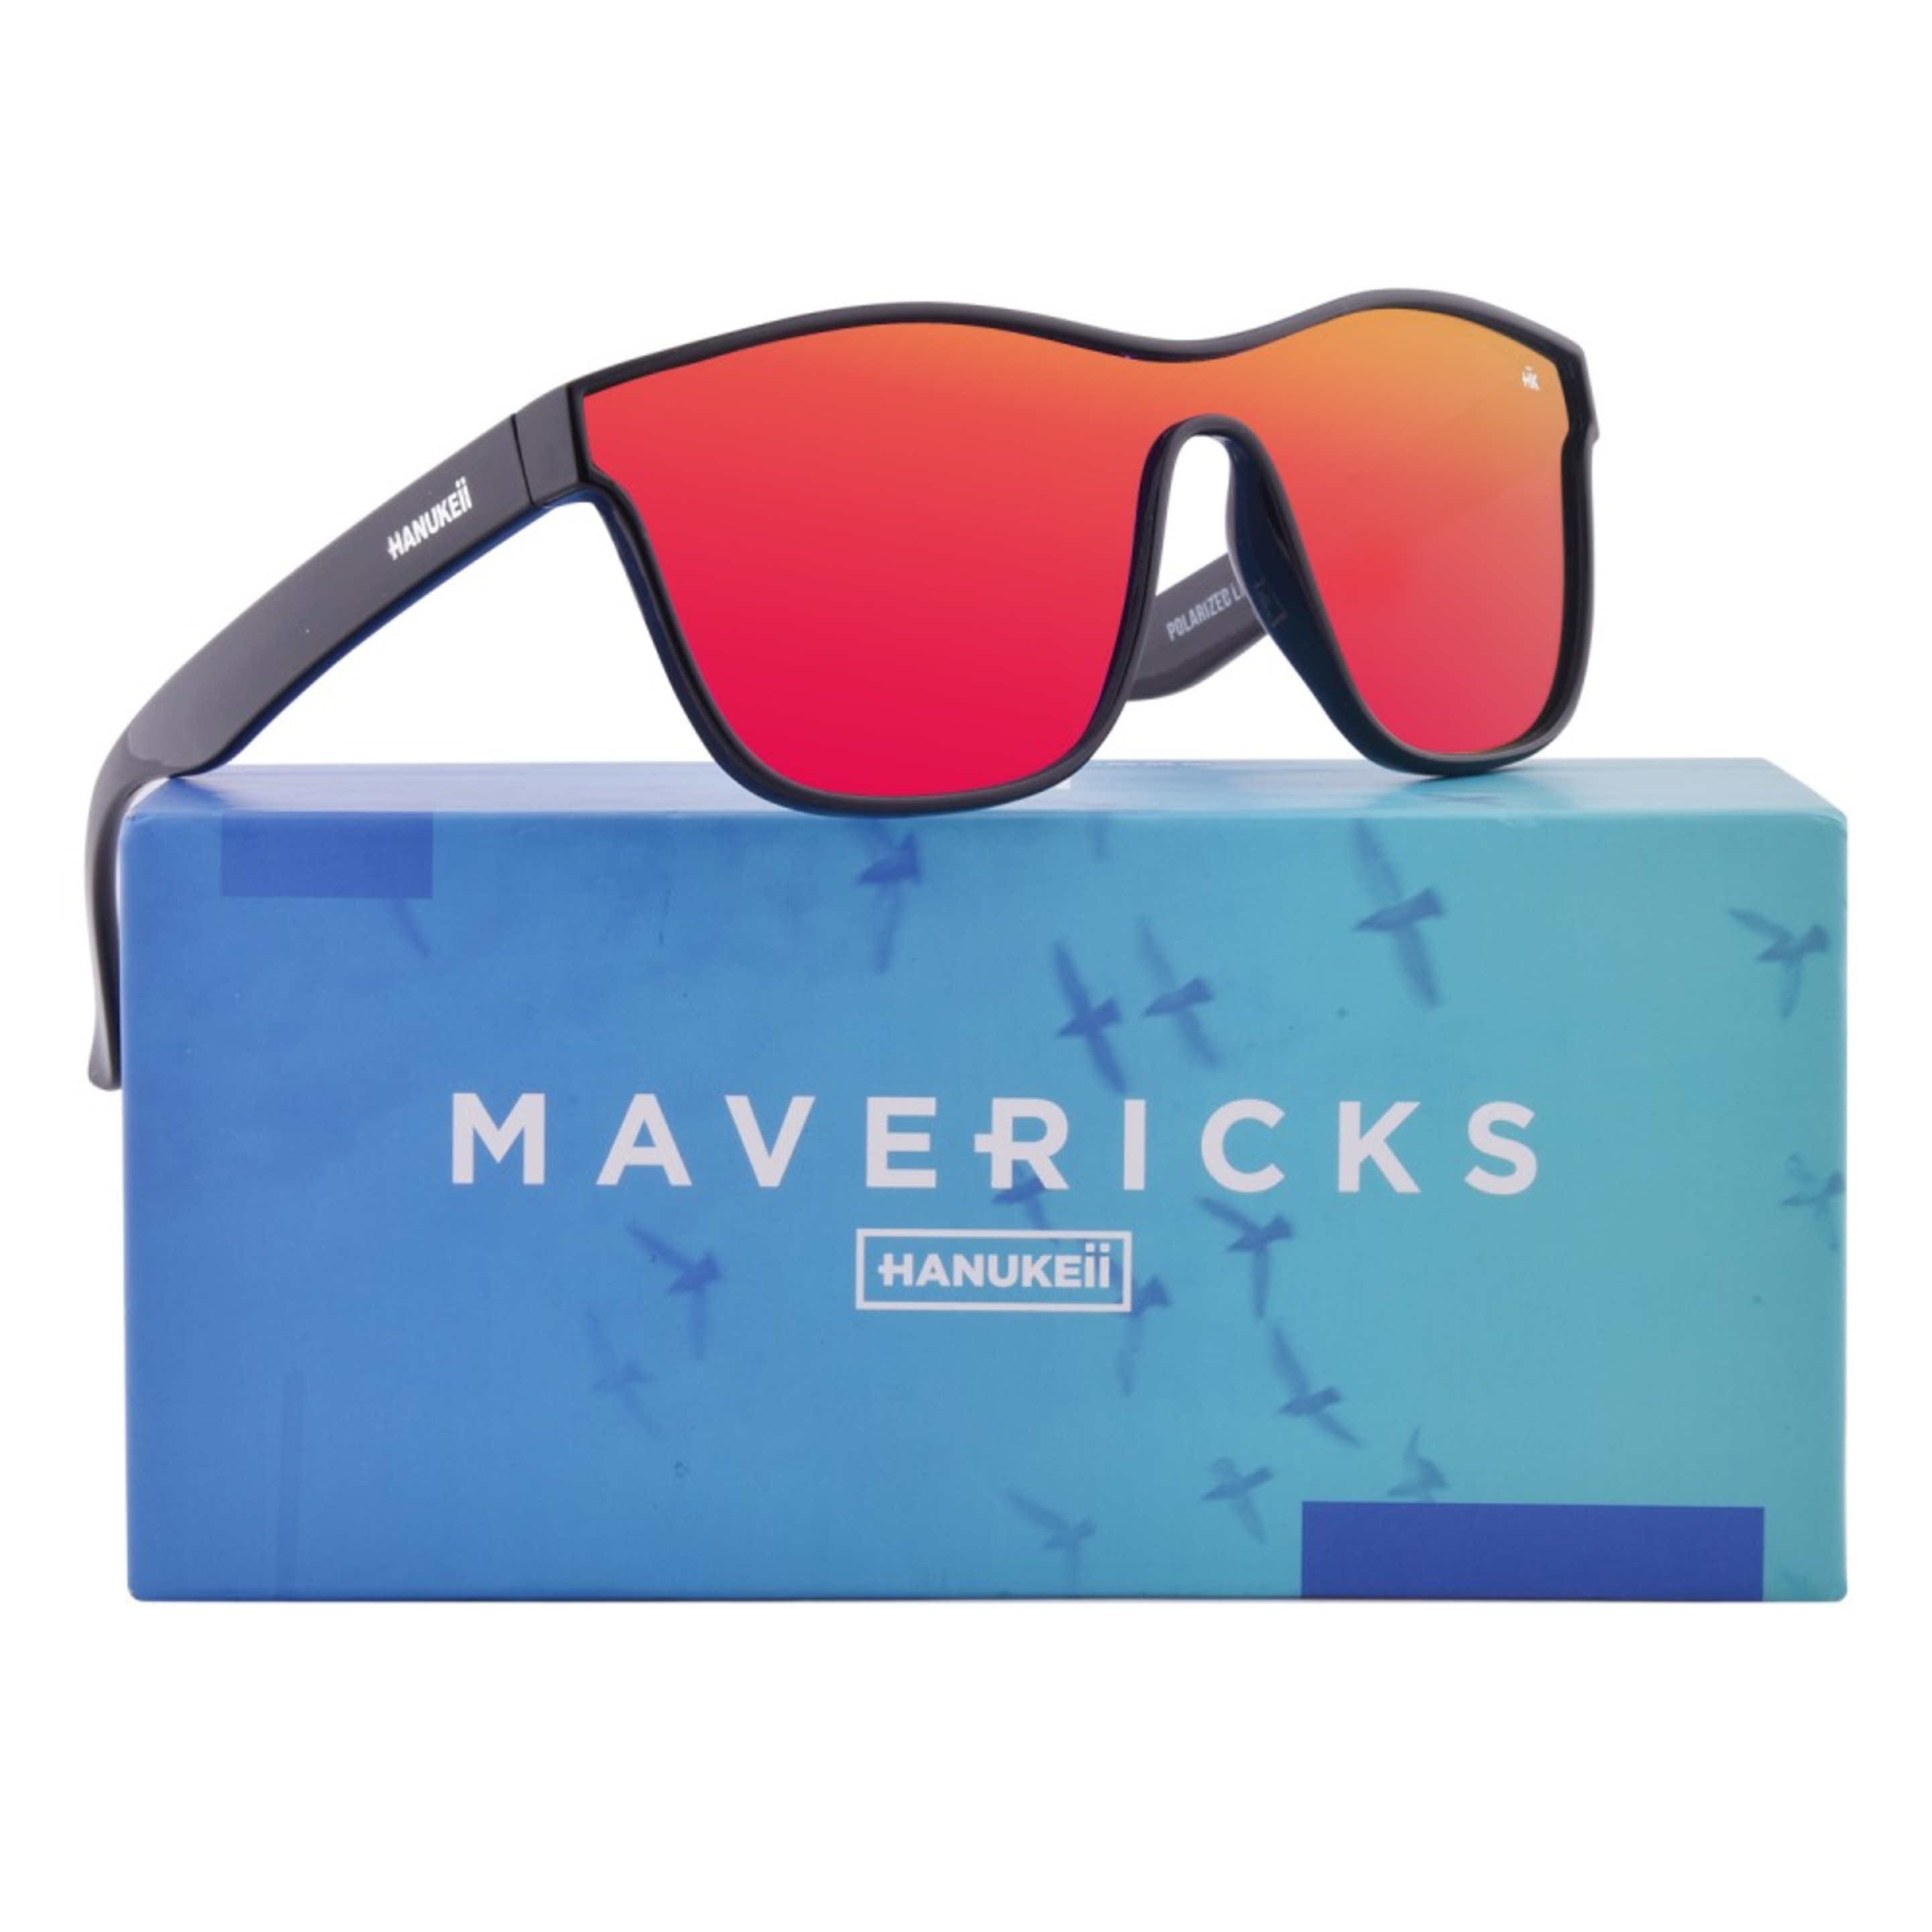 Hanukeii Gafas De Sol Espejo Mavericks